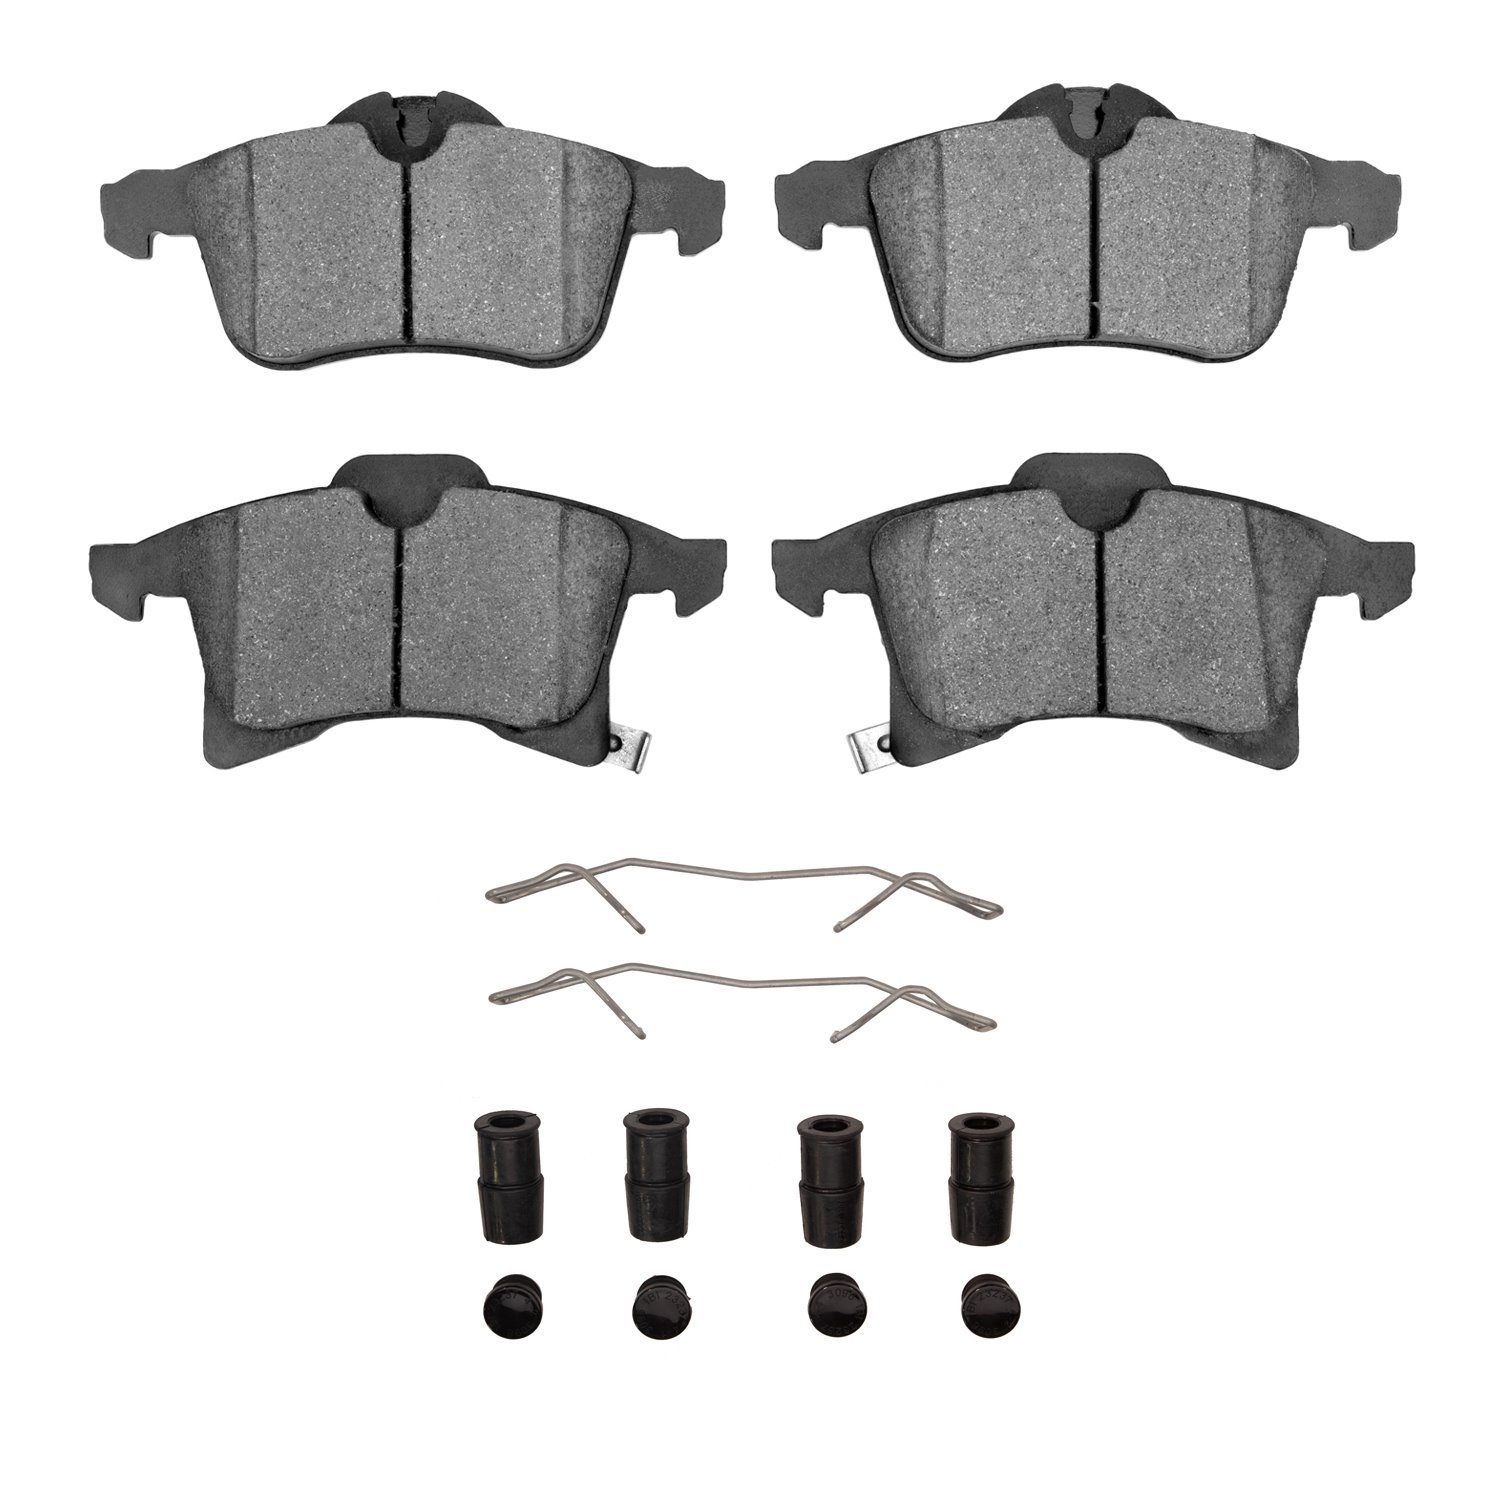 1310-1361-01 3000-Series Ceramic Brake Pads & Hardware Kit, 2004-2008 GM, Position: Front